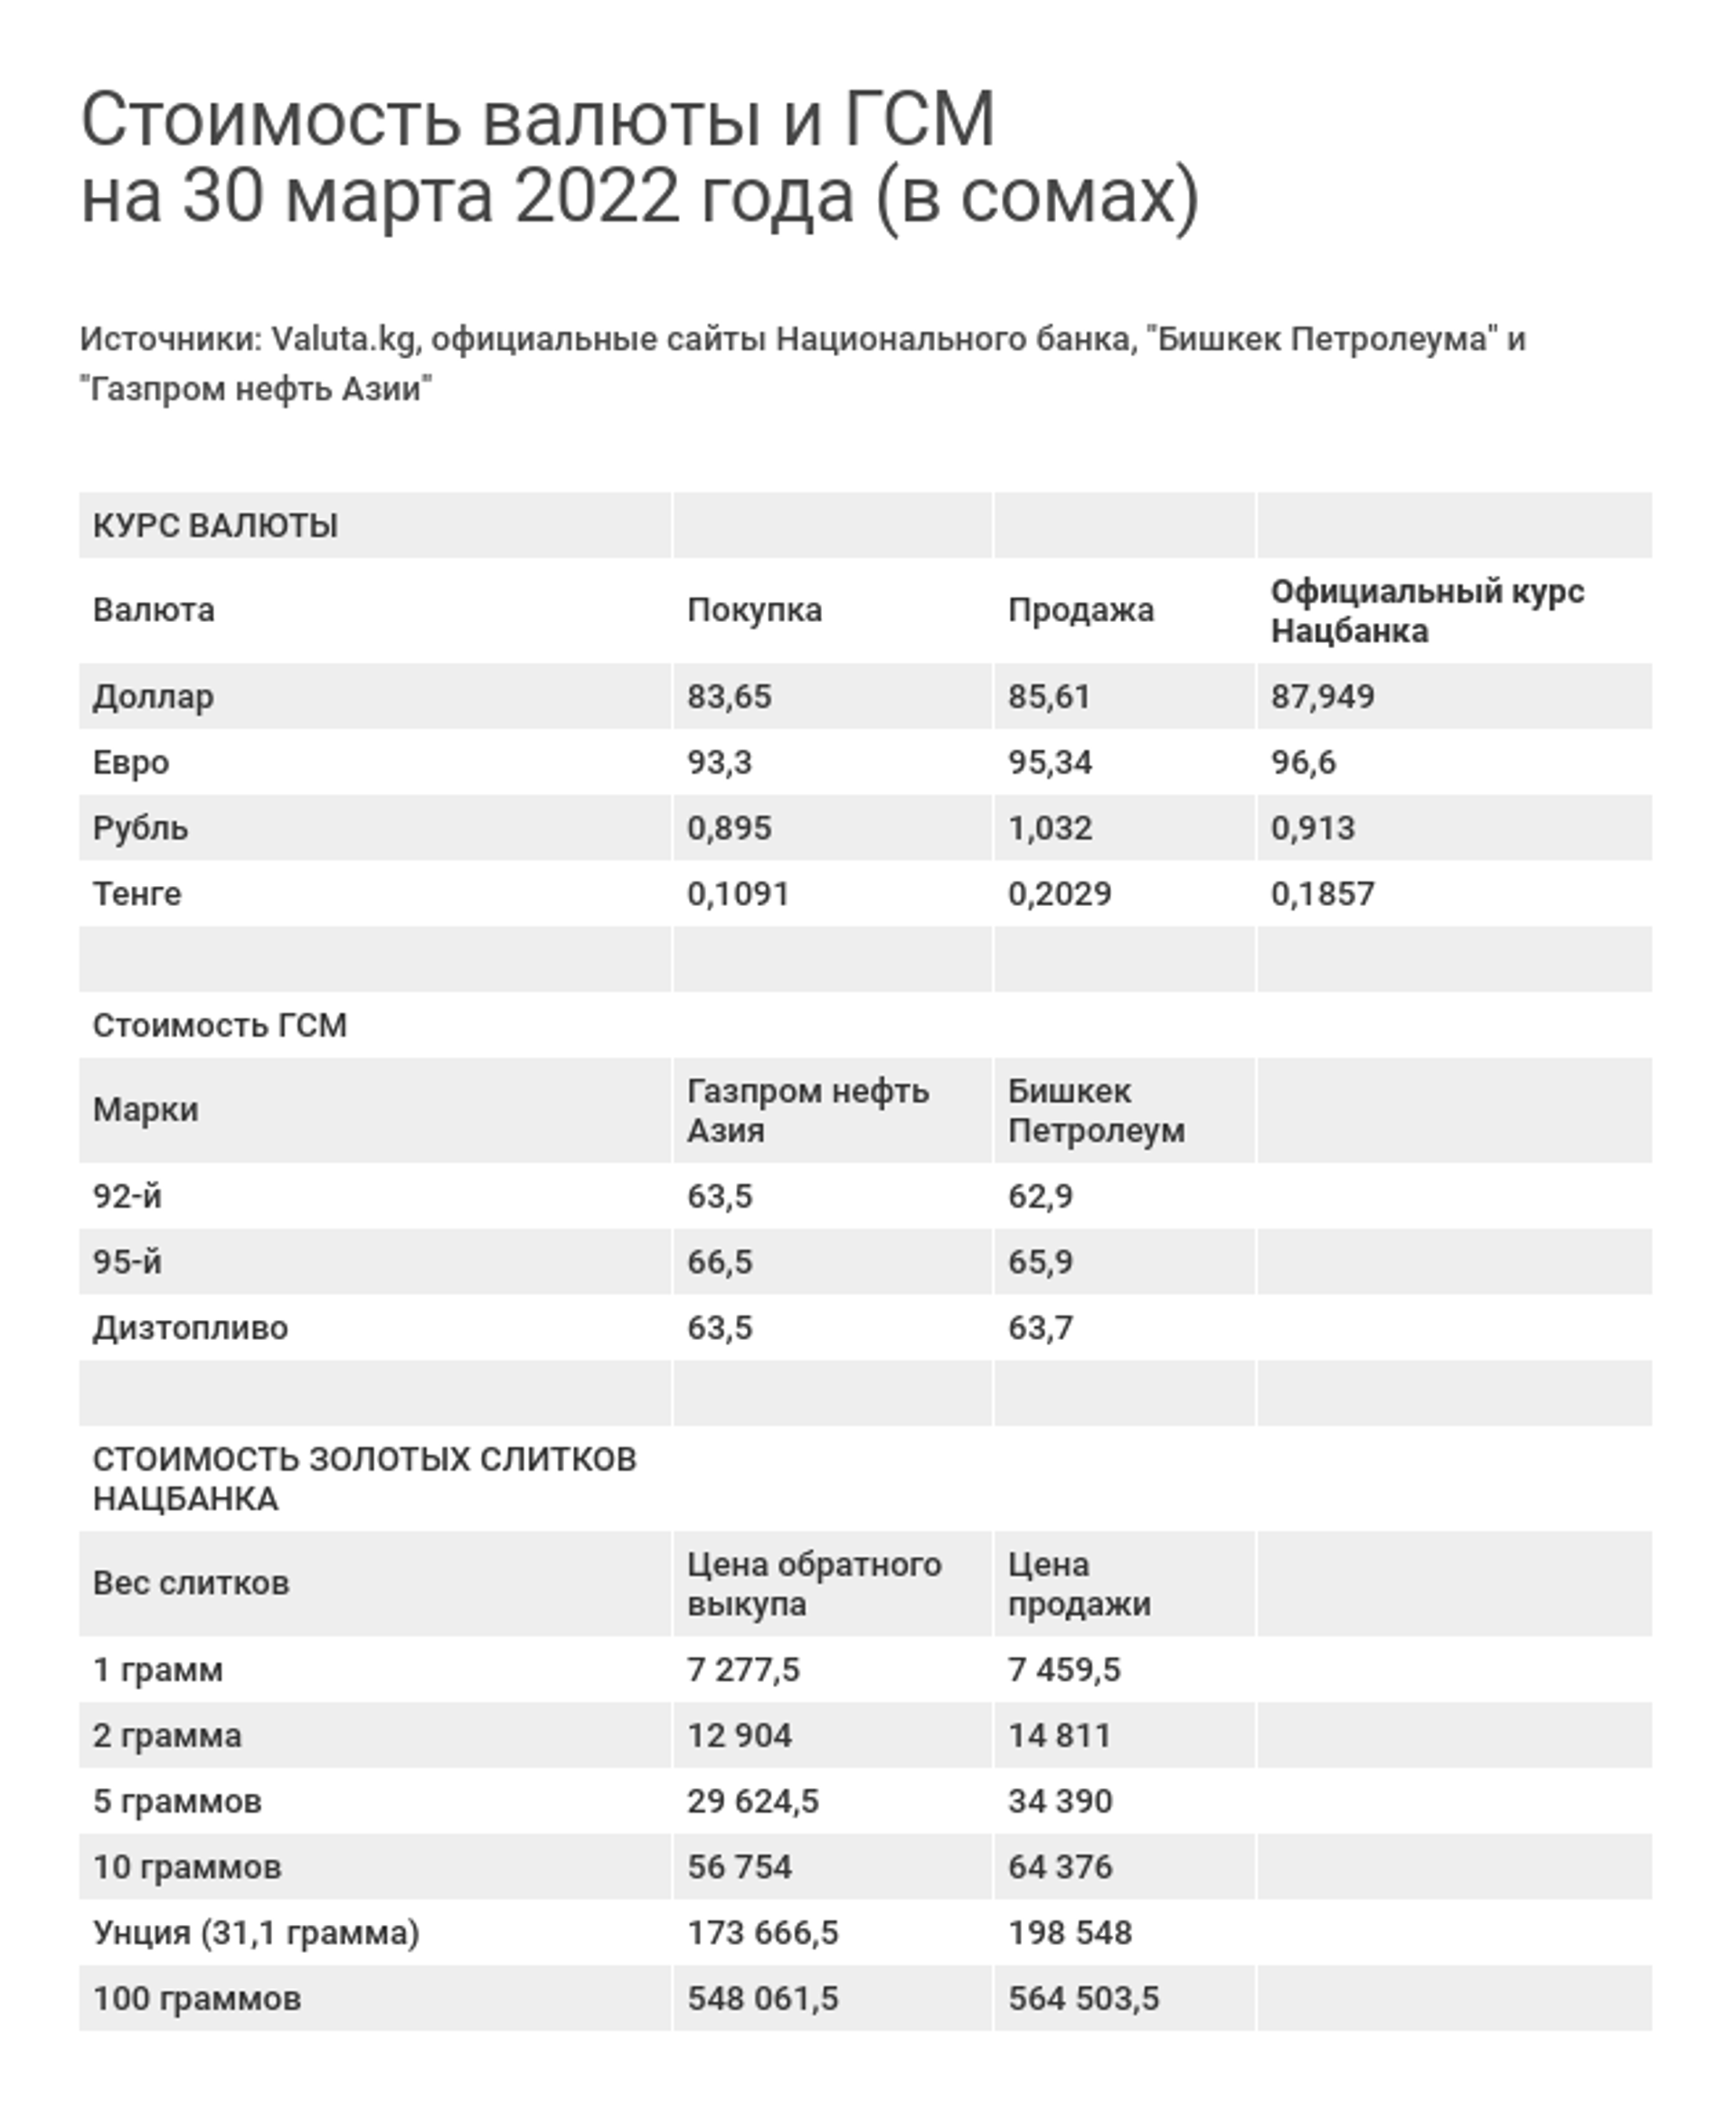 Стоимость валюты и ГСМ на 30 марта 2022 года (в сомах) - Sputnik Кыргызстан, 1920, 30.03.2022